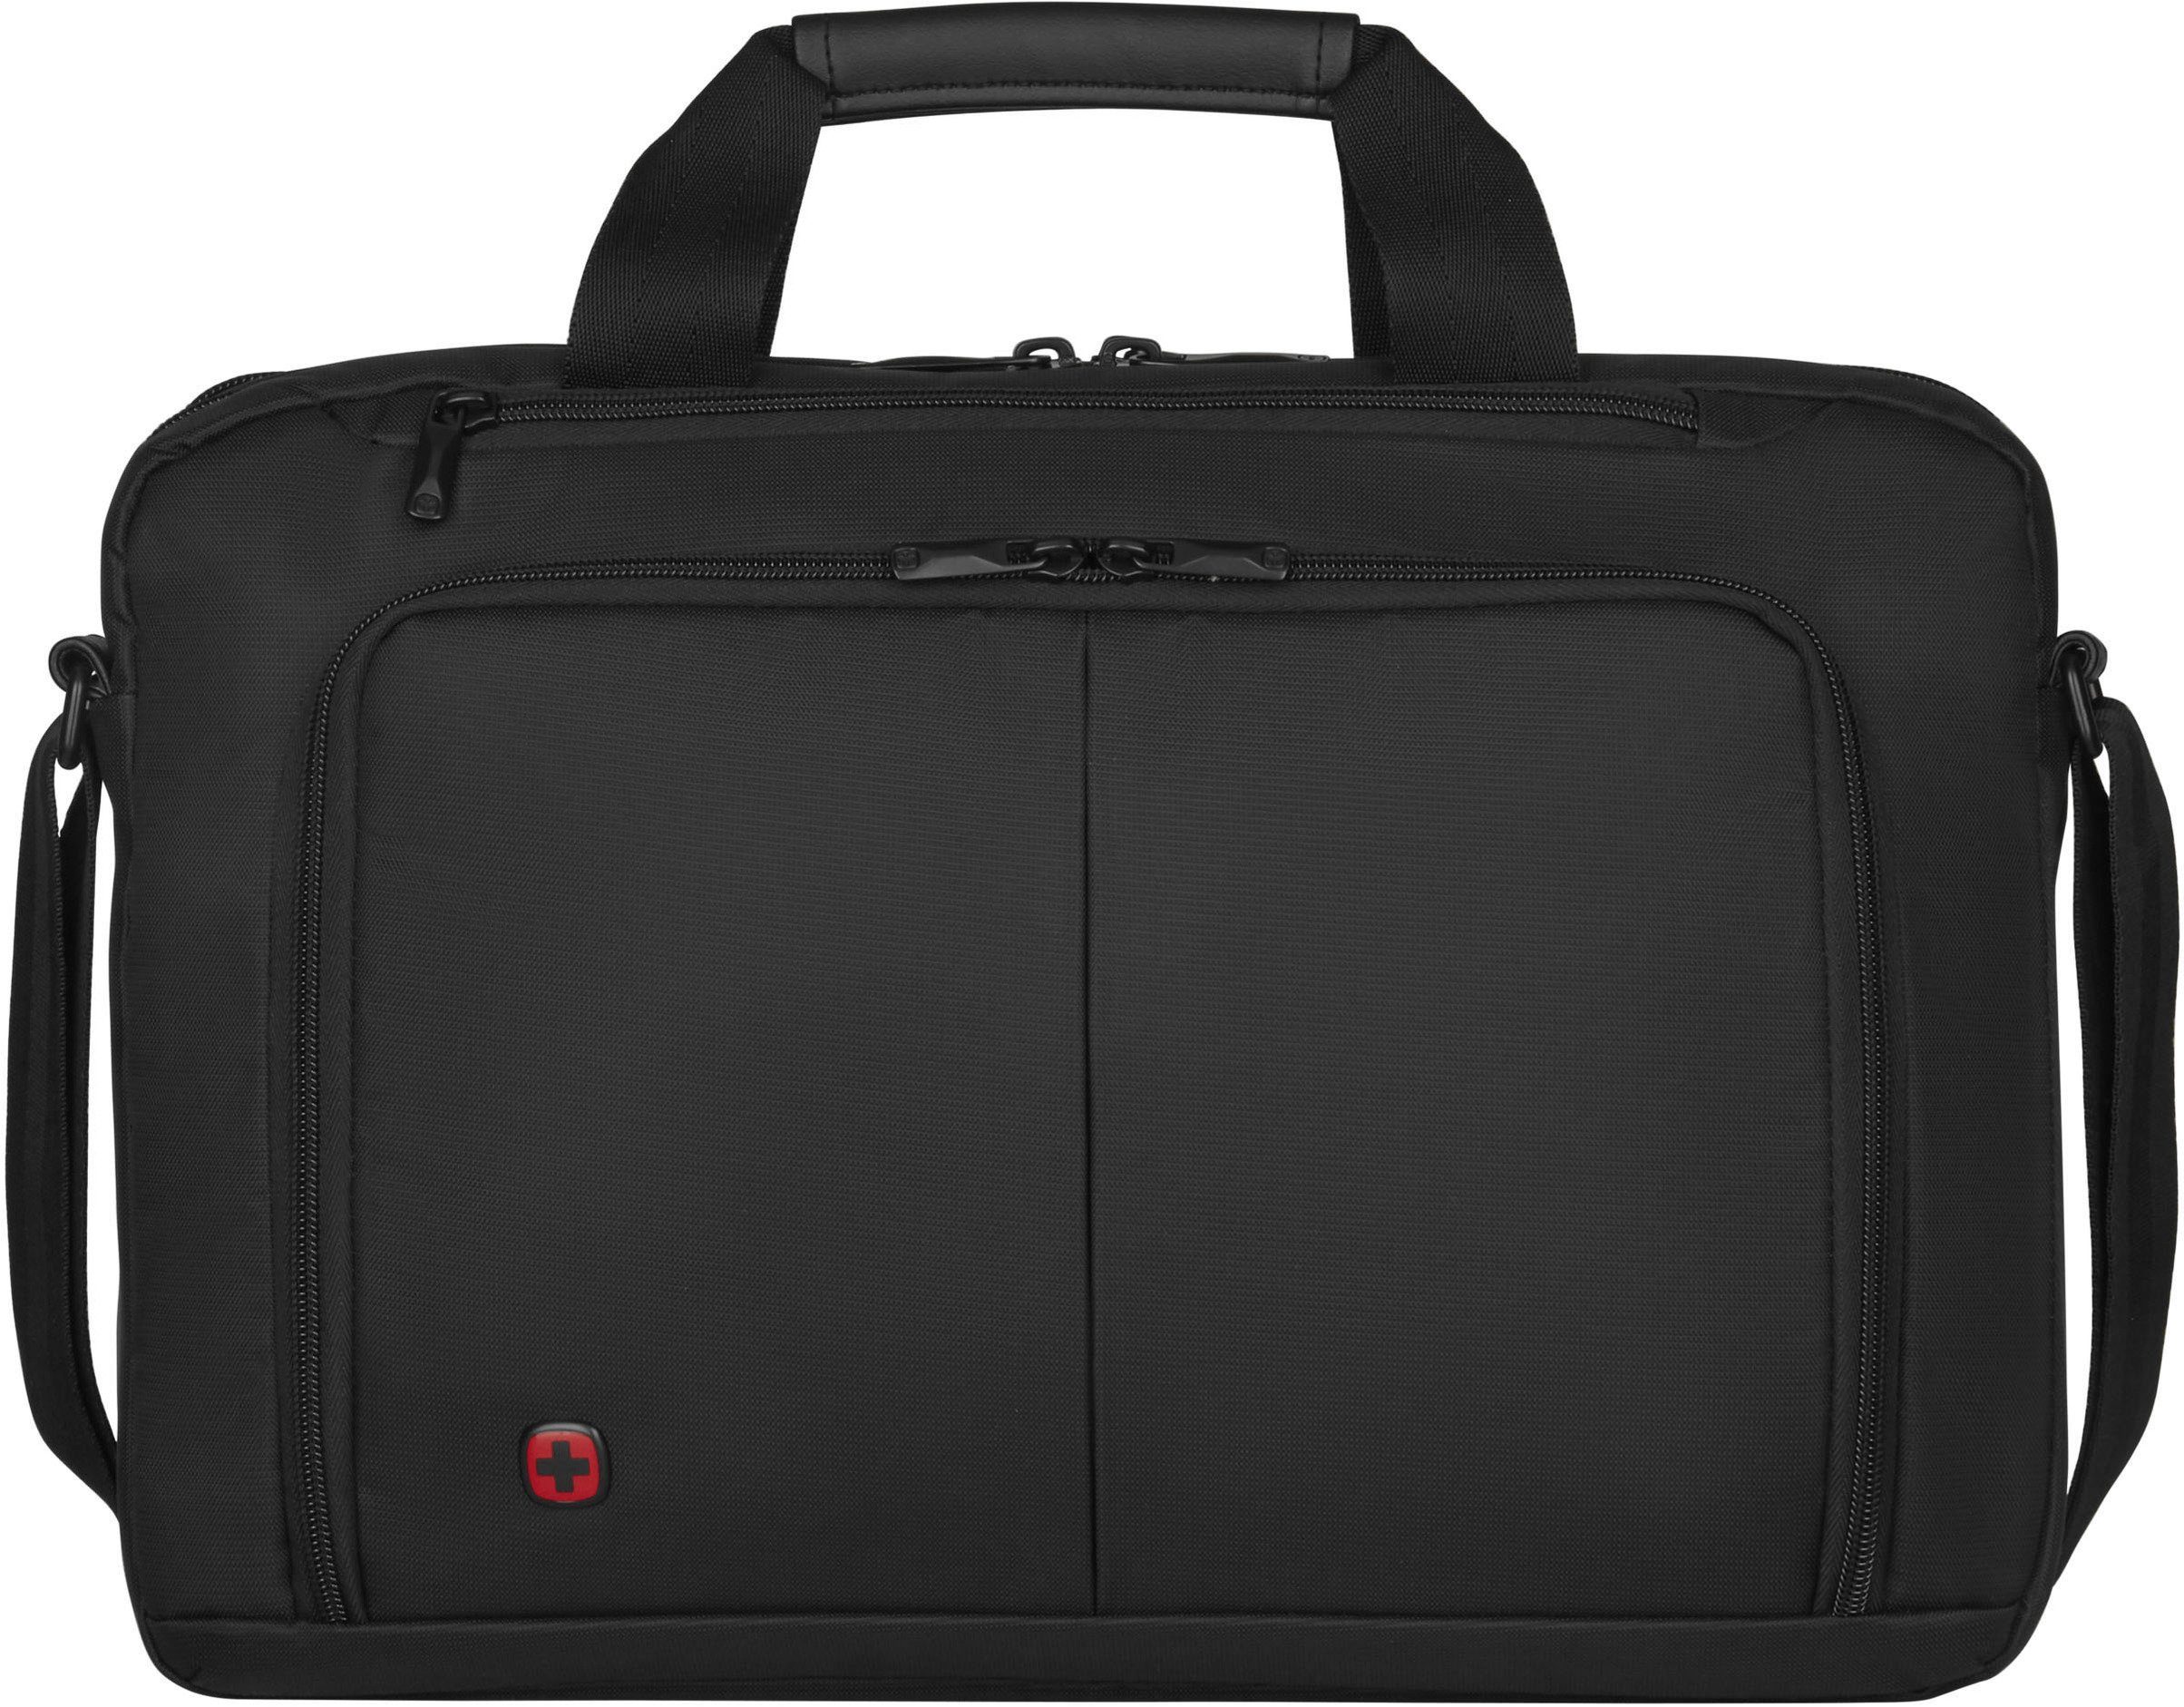 Wenger und zusätzlichem Reisen 10-Zoll für komfortables mehreren mit Laptopfach Tabletfach, Laptoptasche schwarz, 16-Zoll mit Source, Gepäckstücken Trolley-Aufsteck-System